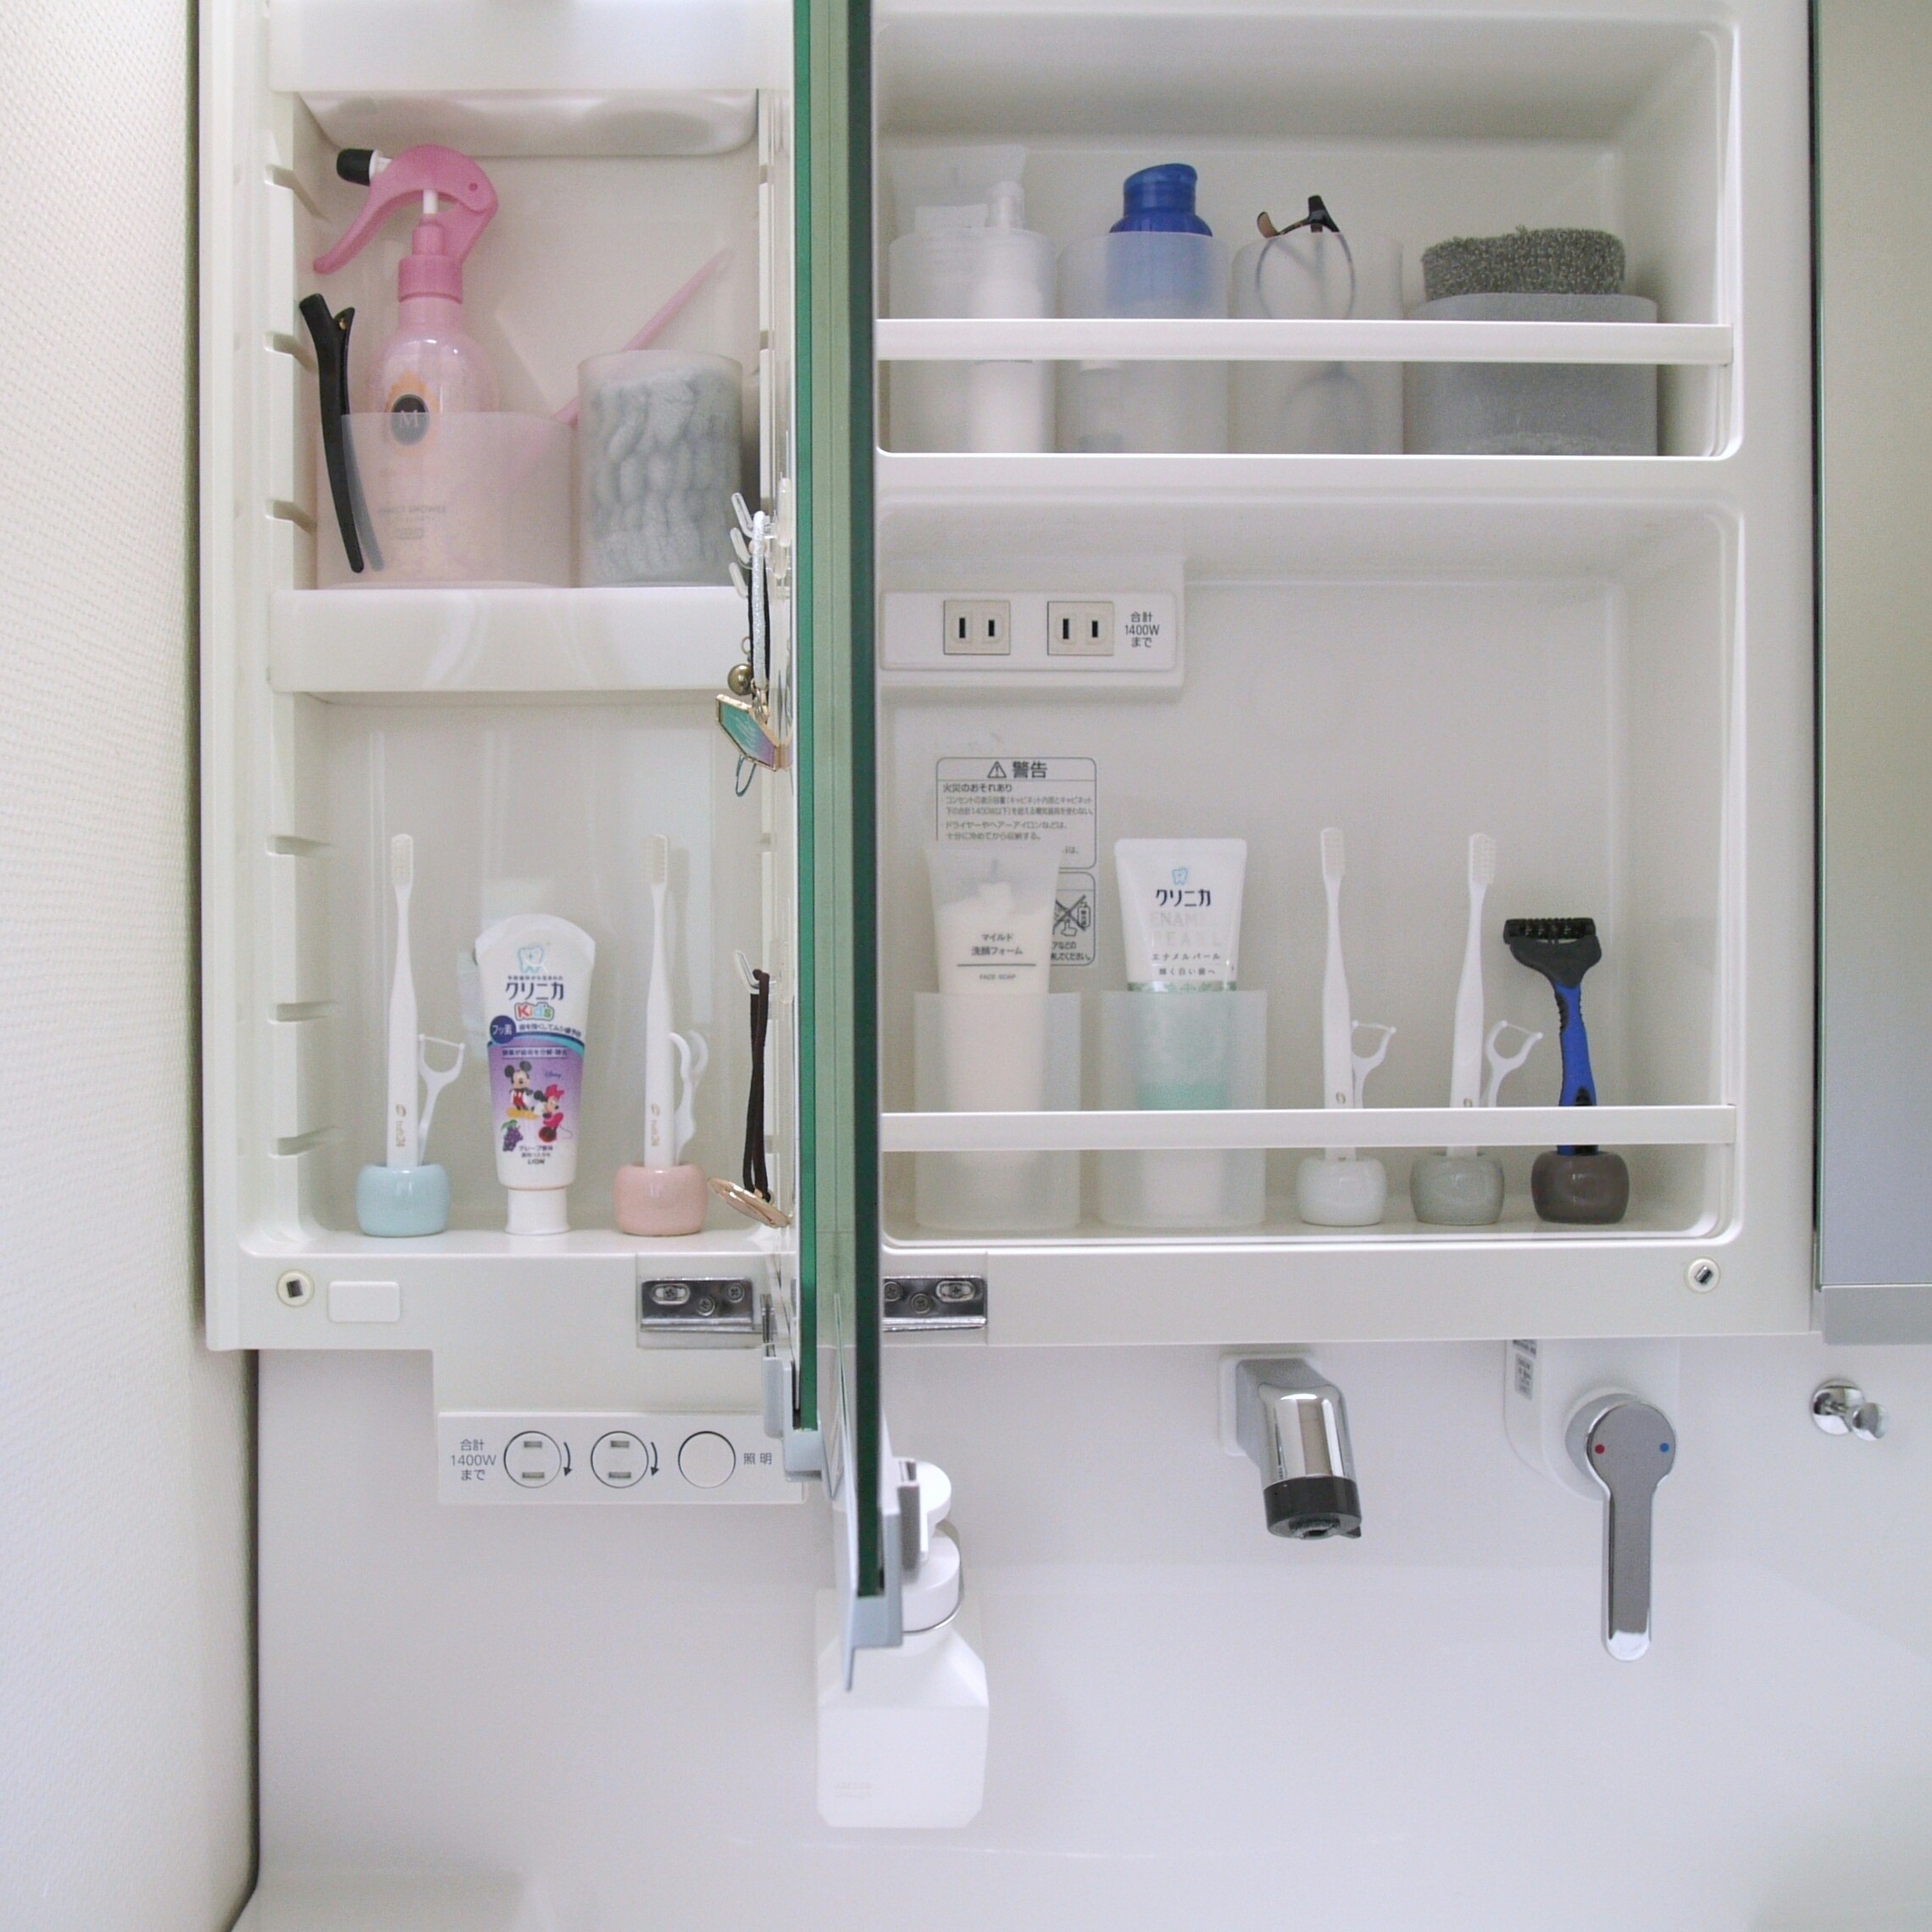 100均 グッズで 歯ブラシを吊り下げ収納 洗面台の鏡裏を有効利用 Usagi Works Powered By ライブドアブログ